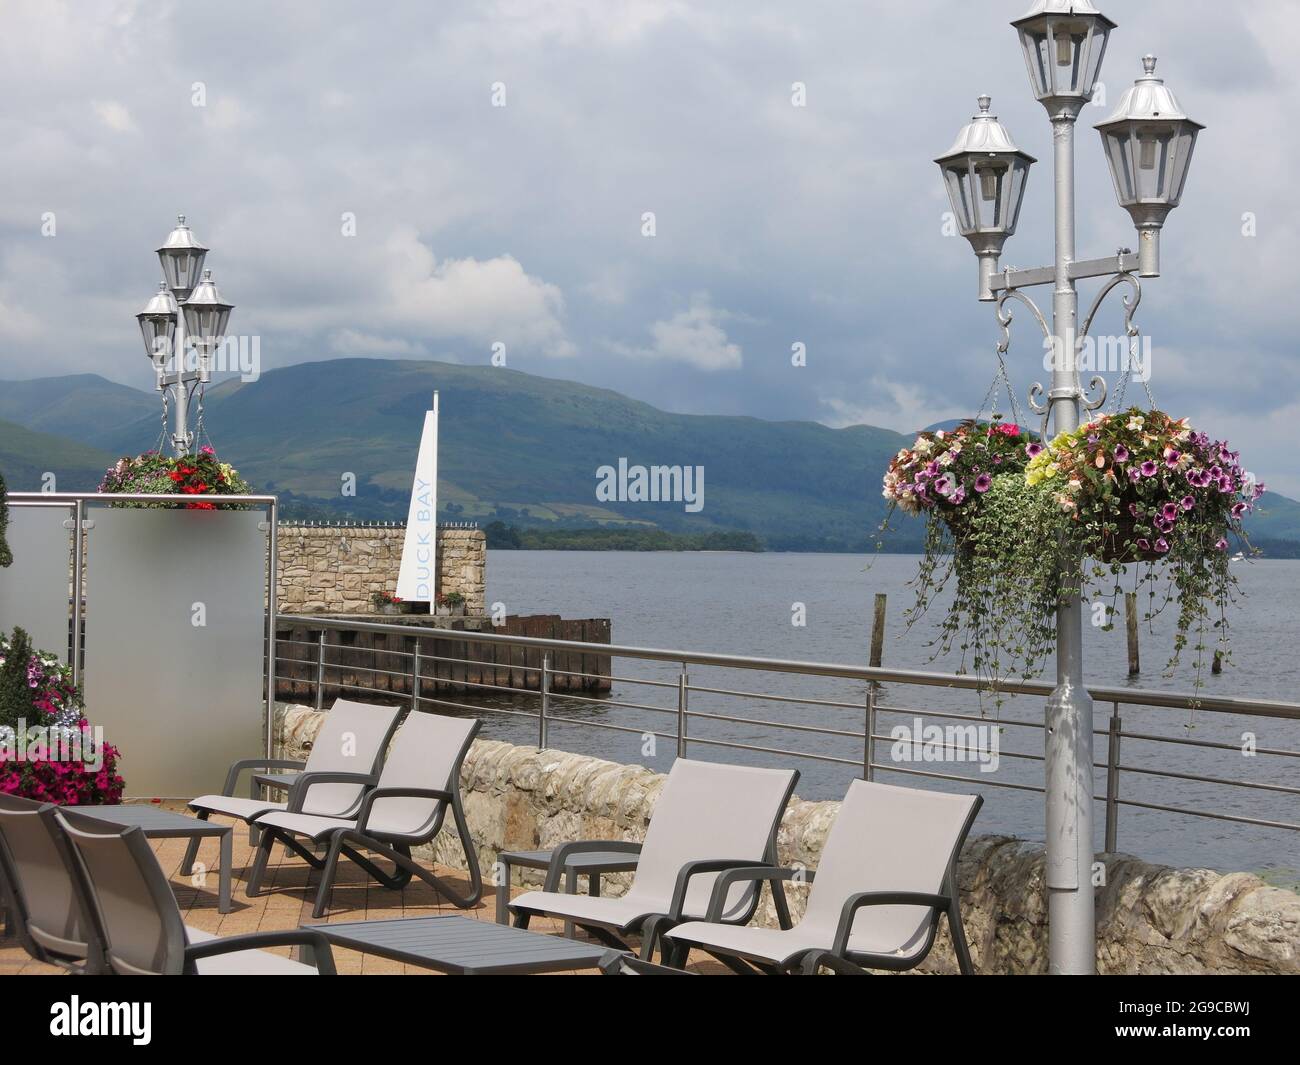 Vue panoramique sur le Loch Lomond depuis le restaurant de Duck Bay Marina, avec paniers suspendus le long de la terrasse au bord de l'eau. Banque D'Images